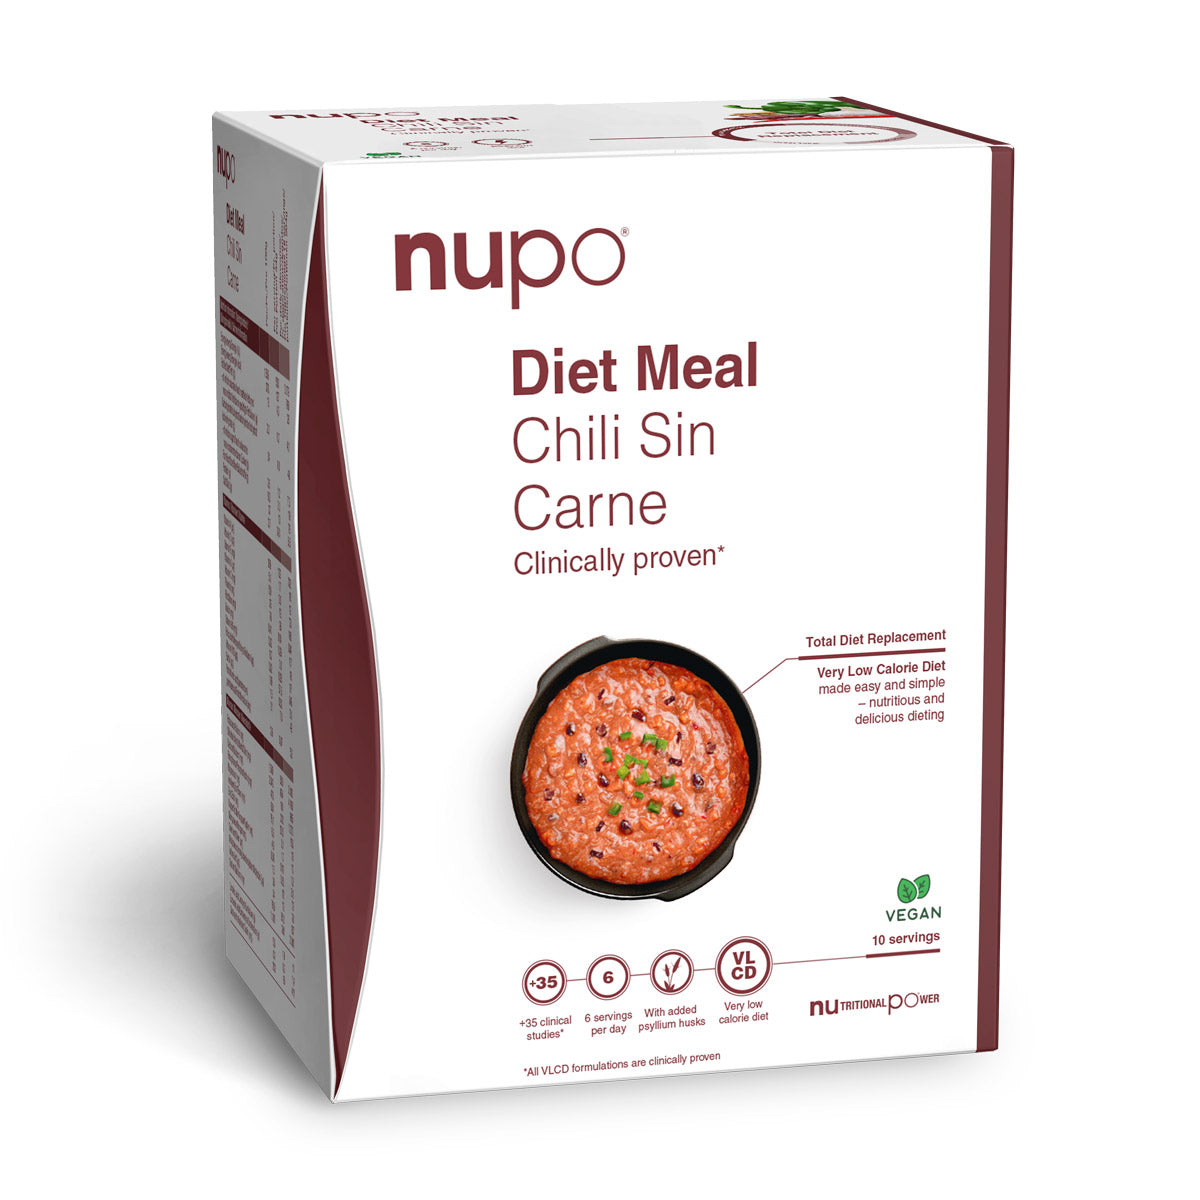 Brug Nupo Diet Meal (340g) - Chili Sin Carne til en forbedret oplevelse